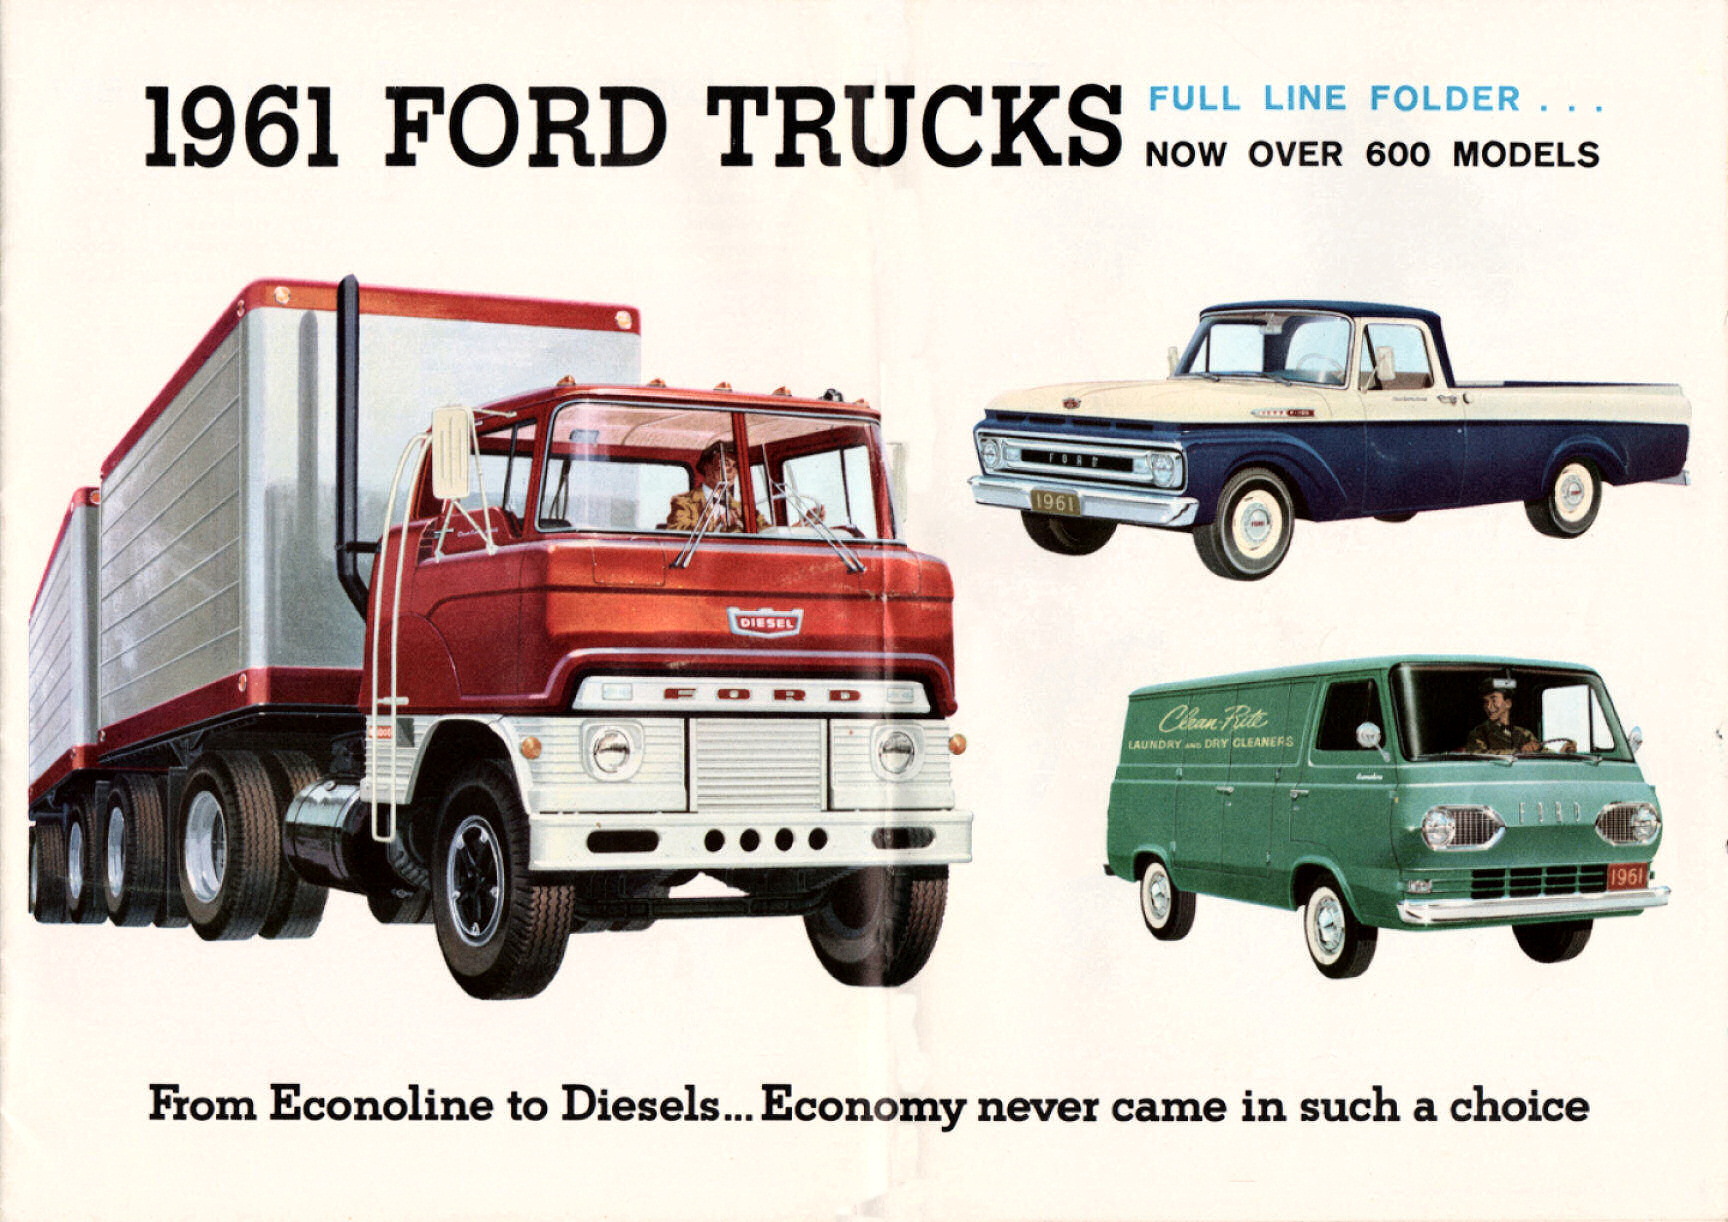 1961 Ford Truck Full Line Brochure